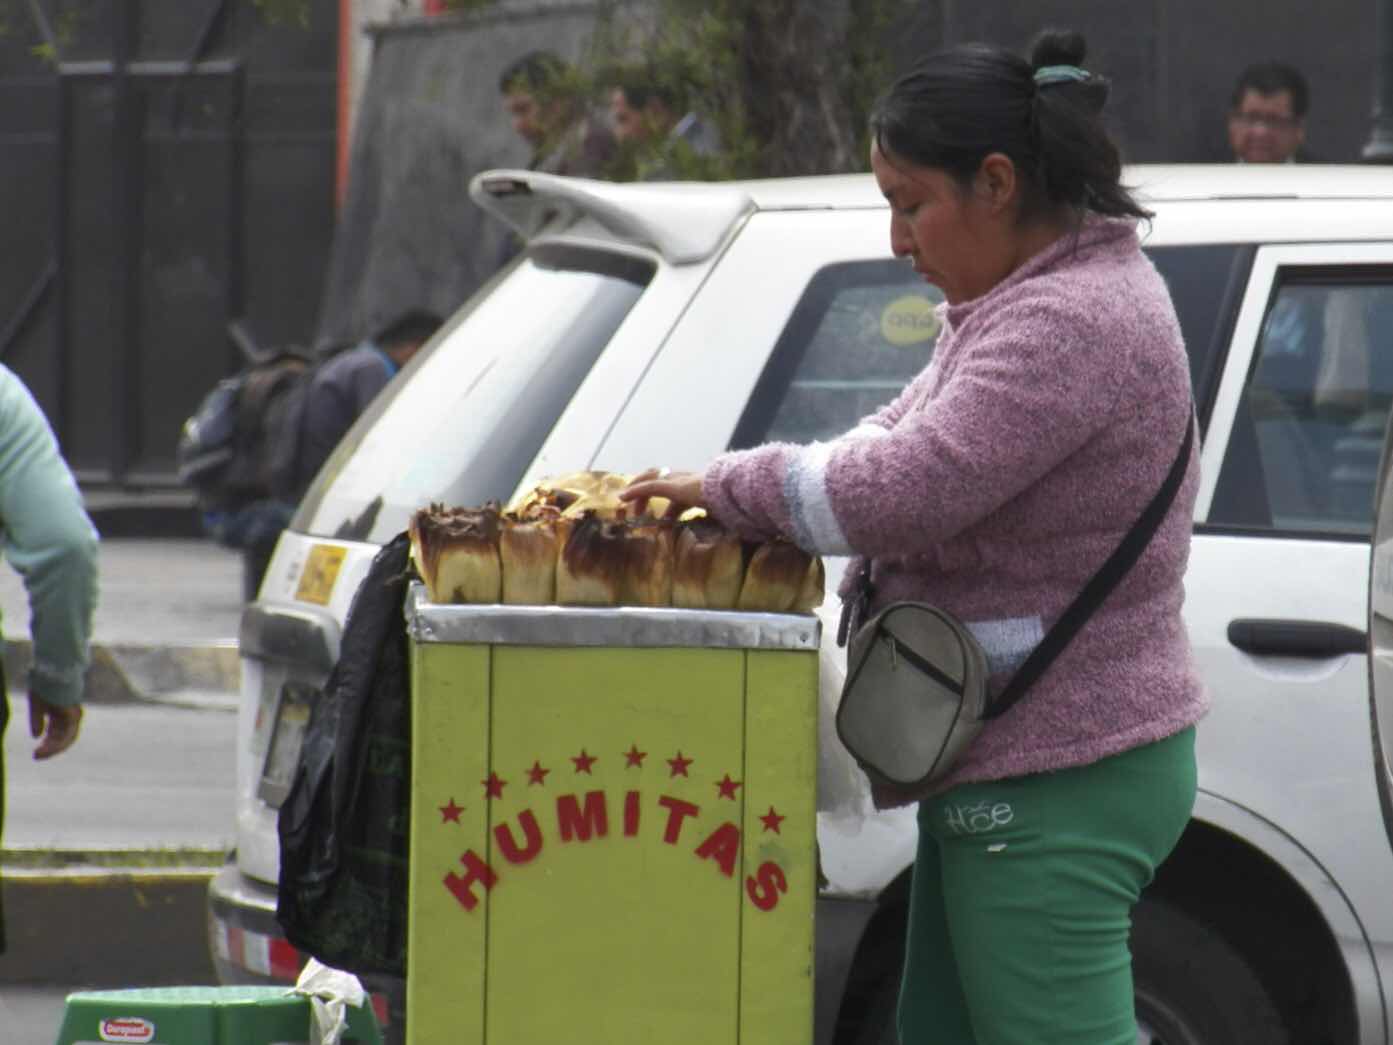 Humitas, Lima, Peru